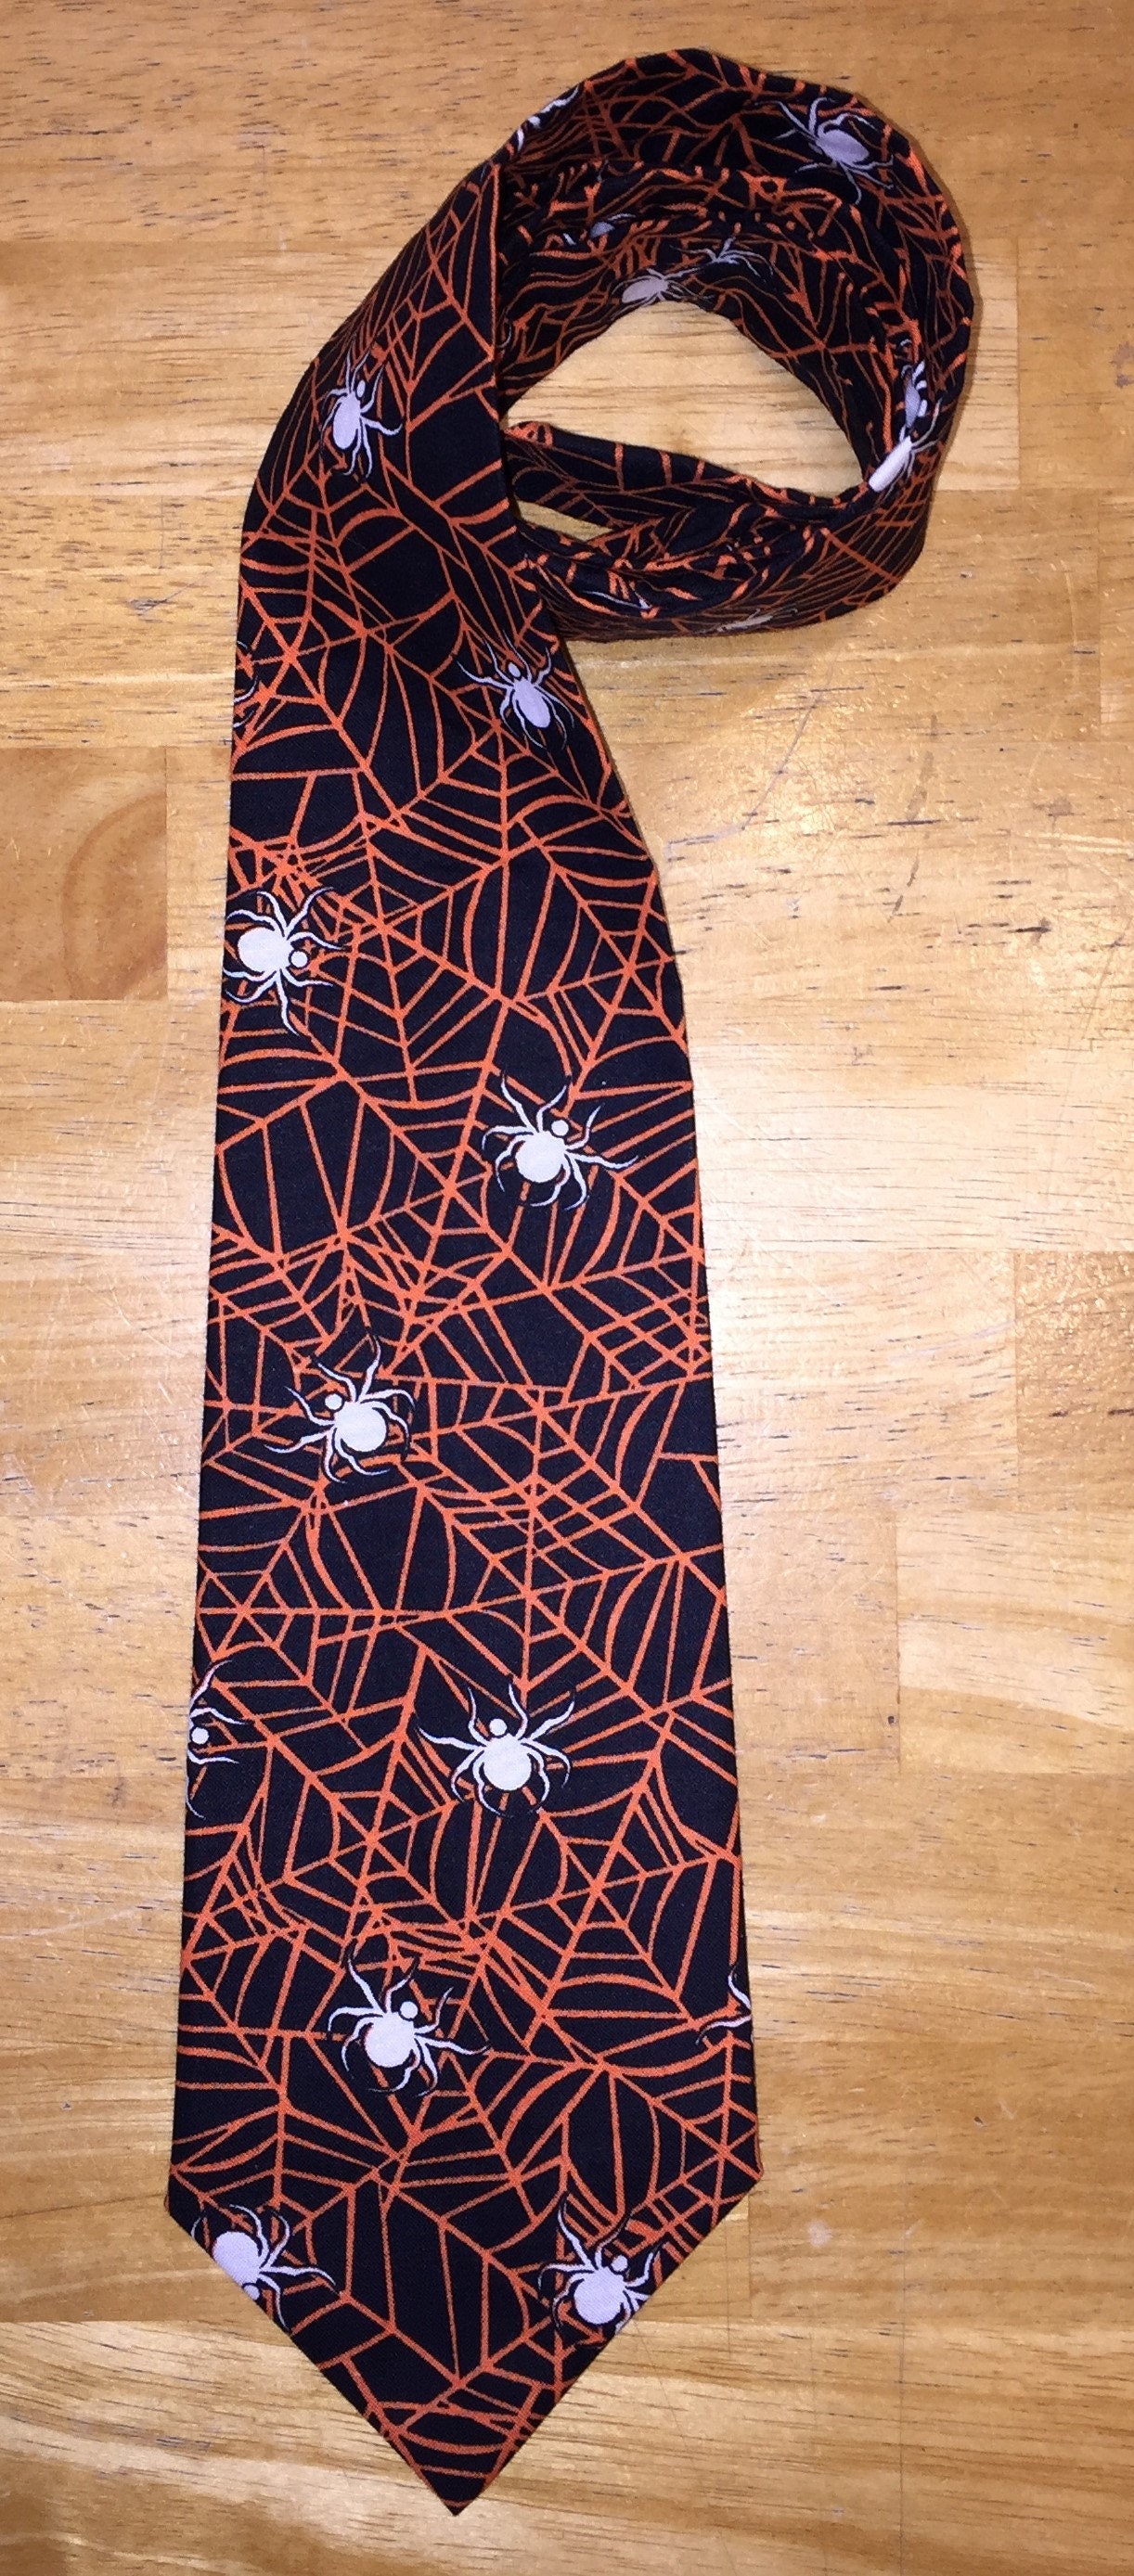 Spider Webs Novelty Necktie Neck Tie Spider Web Halloween | Etsy